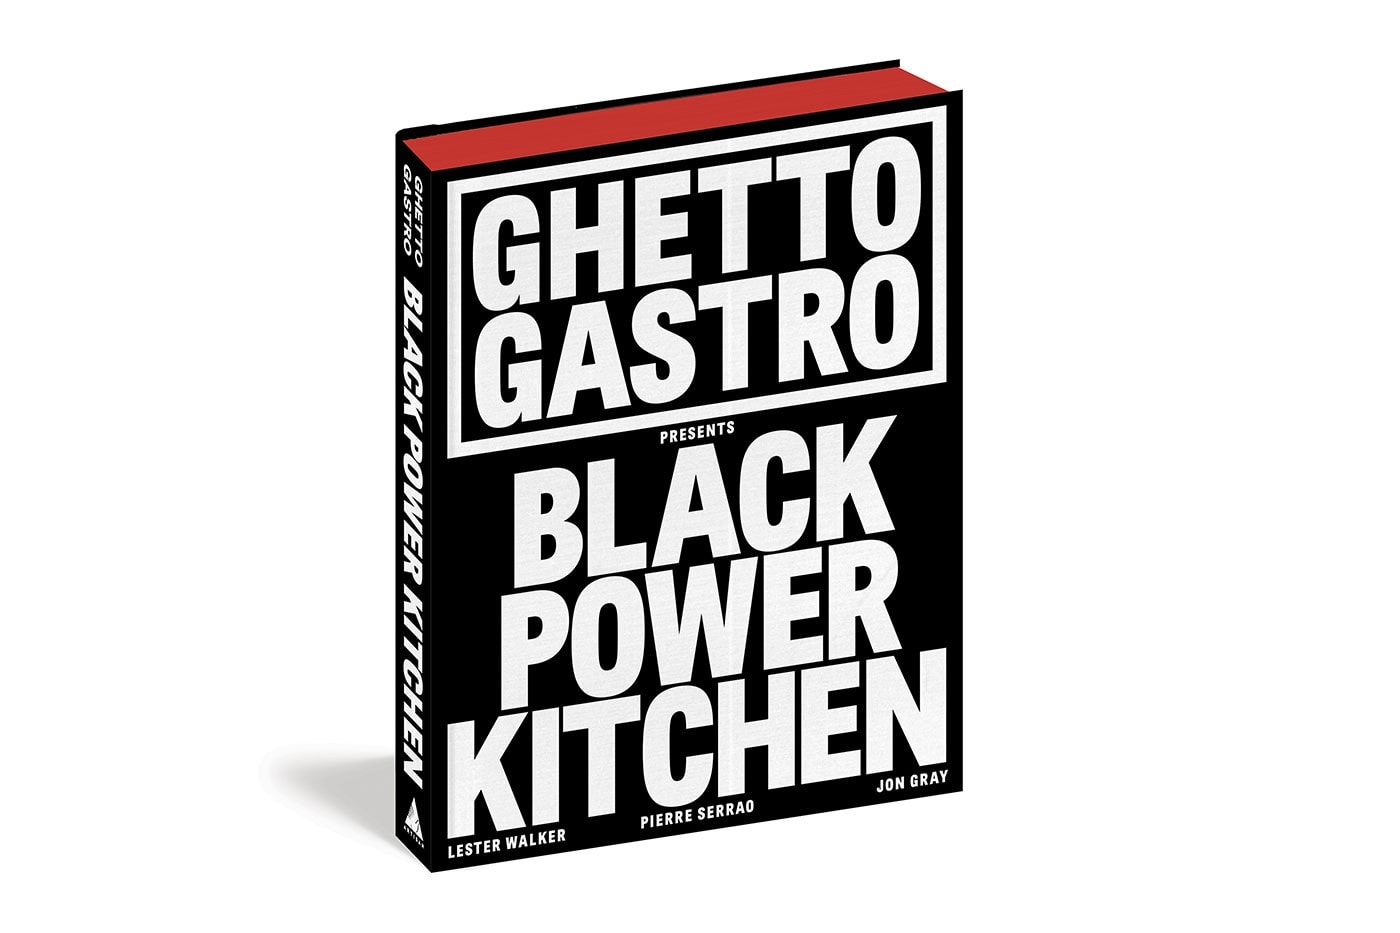 创意团体 Ghetto Gastro 成立 10 周年之际发布新书，谈及饮食文化、黑人力量和书影音 | Monthly RWL